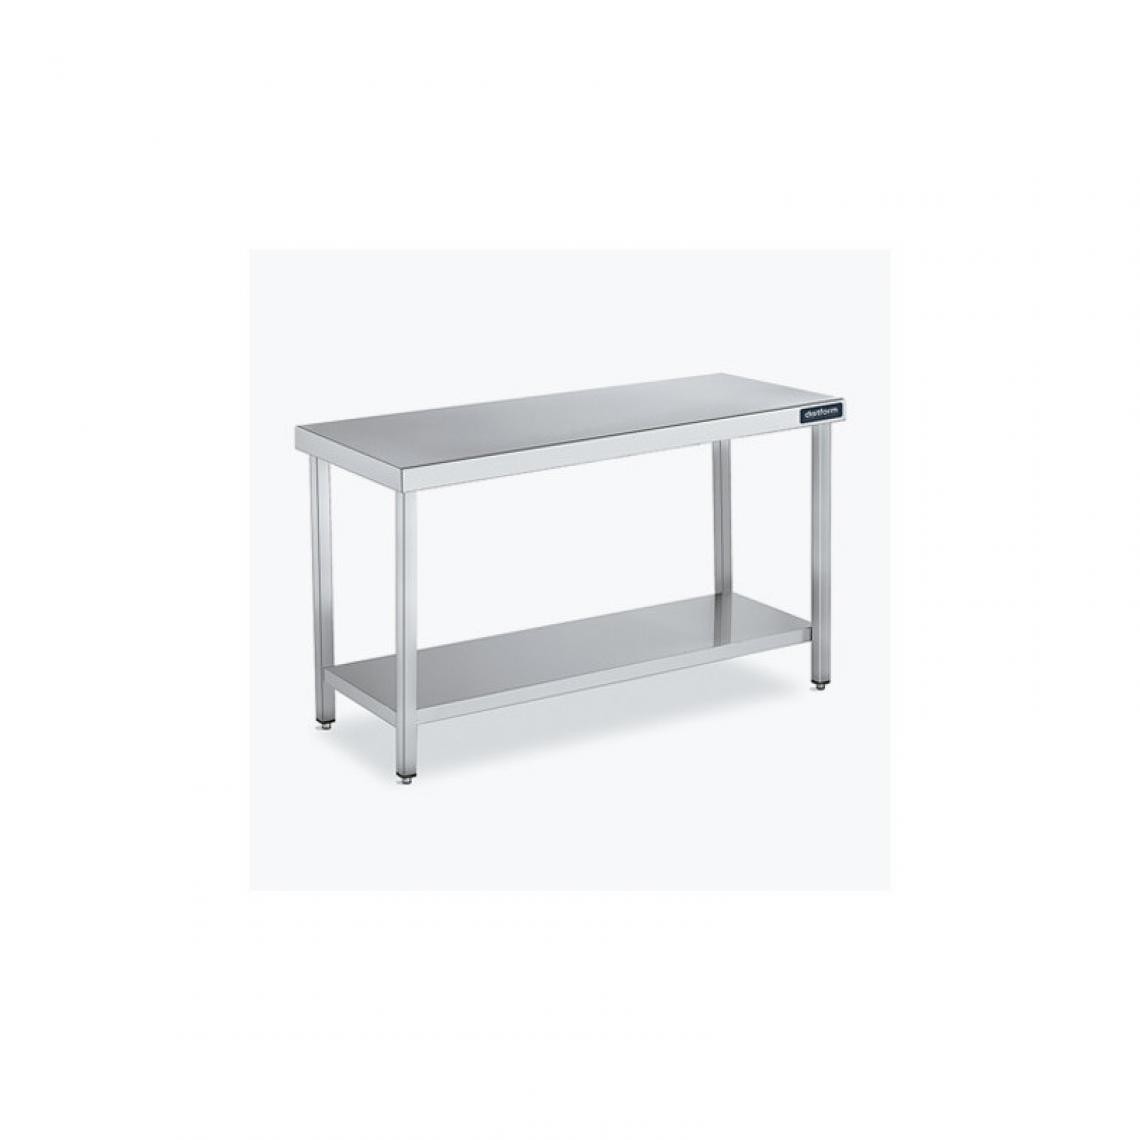 DISTFORM - Table Central 600x550 avec Étagère - Distform - Inox 18/102200x550x850mm - Tables à manger